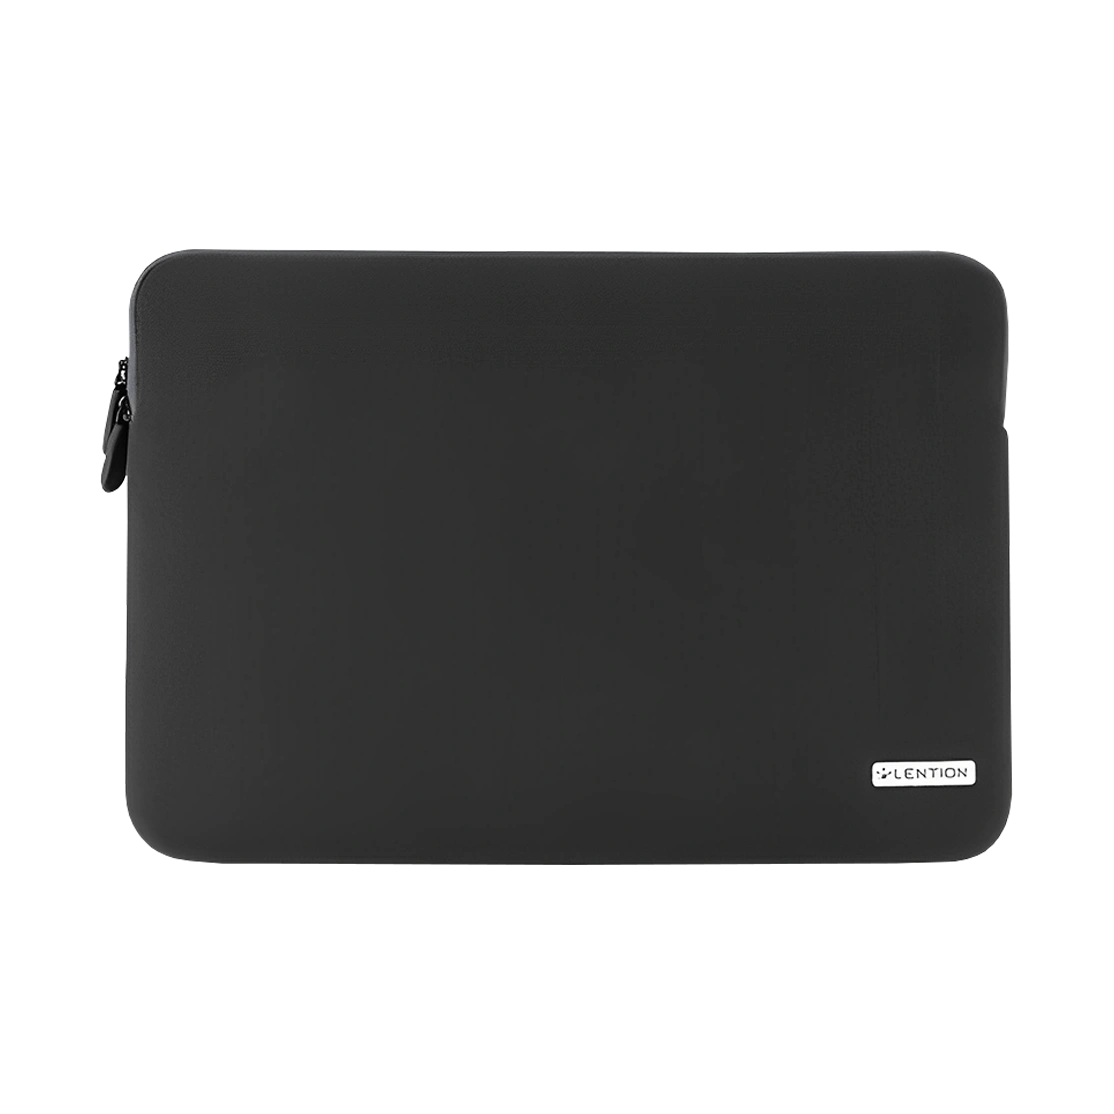 Lention Neoprene Sleeve Zipper Case for Macbook 15-inch PCB-B400